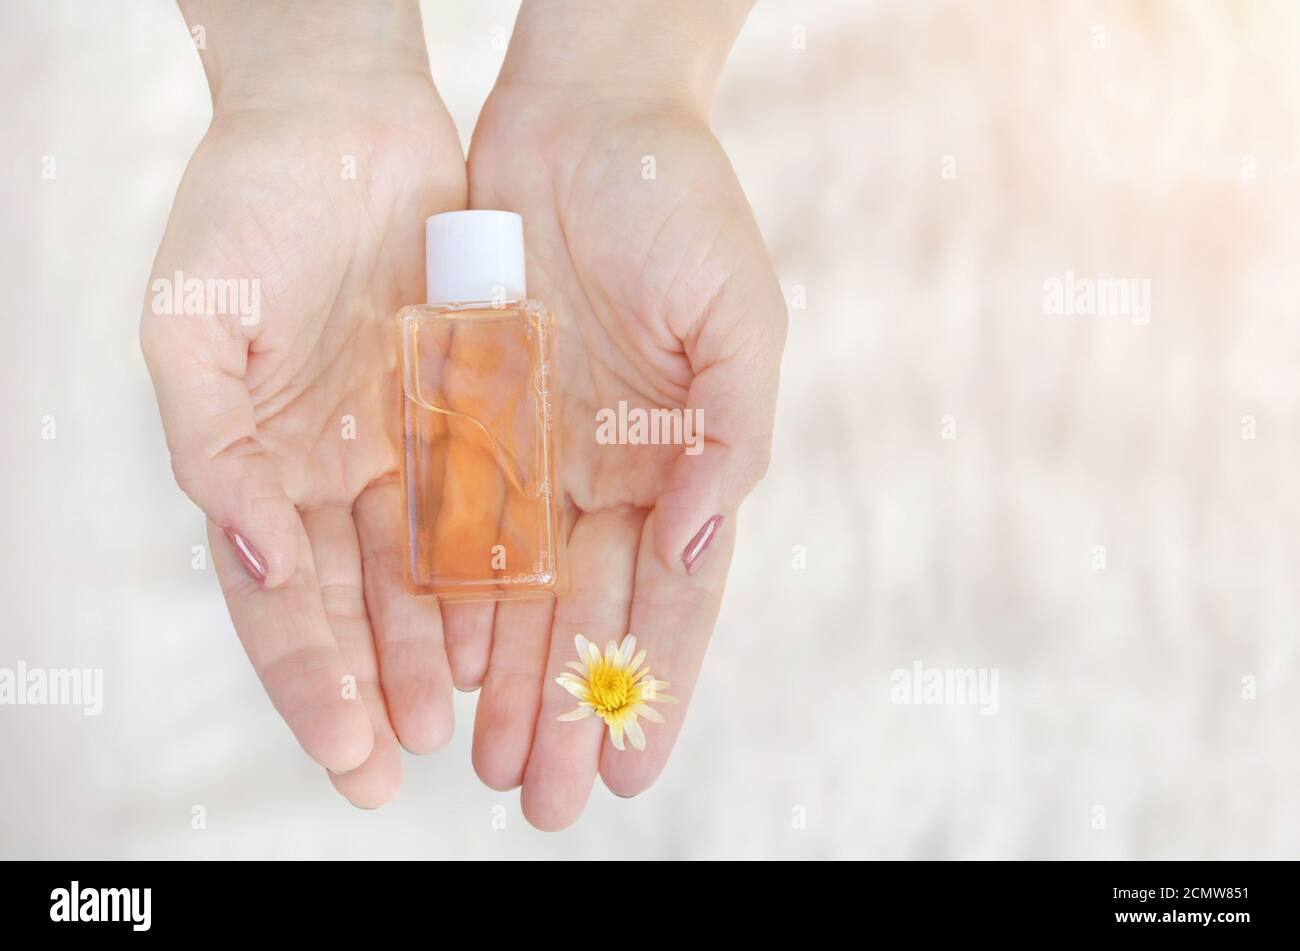 Die Hände der Frauen halten eine kleine Flasche Naturkosmetik auf einem hellen Hintergrund. Kosmetisches Produkt auf Basis natürlicher pflanzlicher Komponenten. Stockfoto